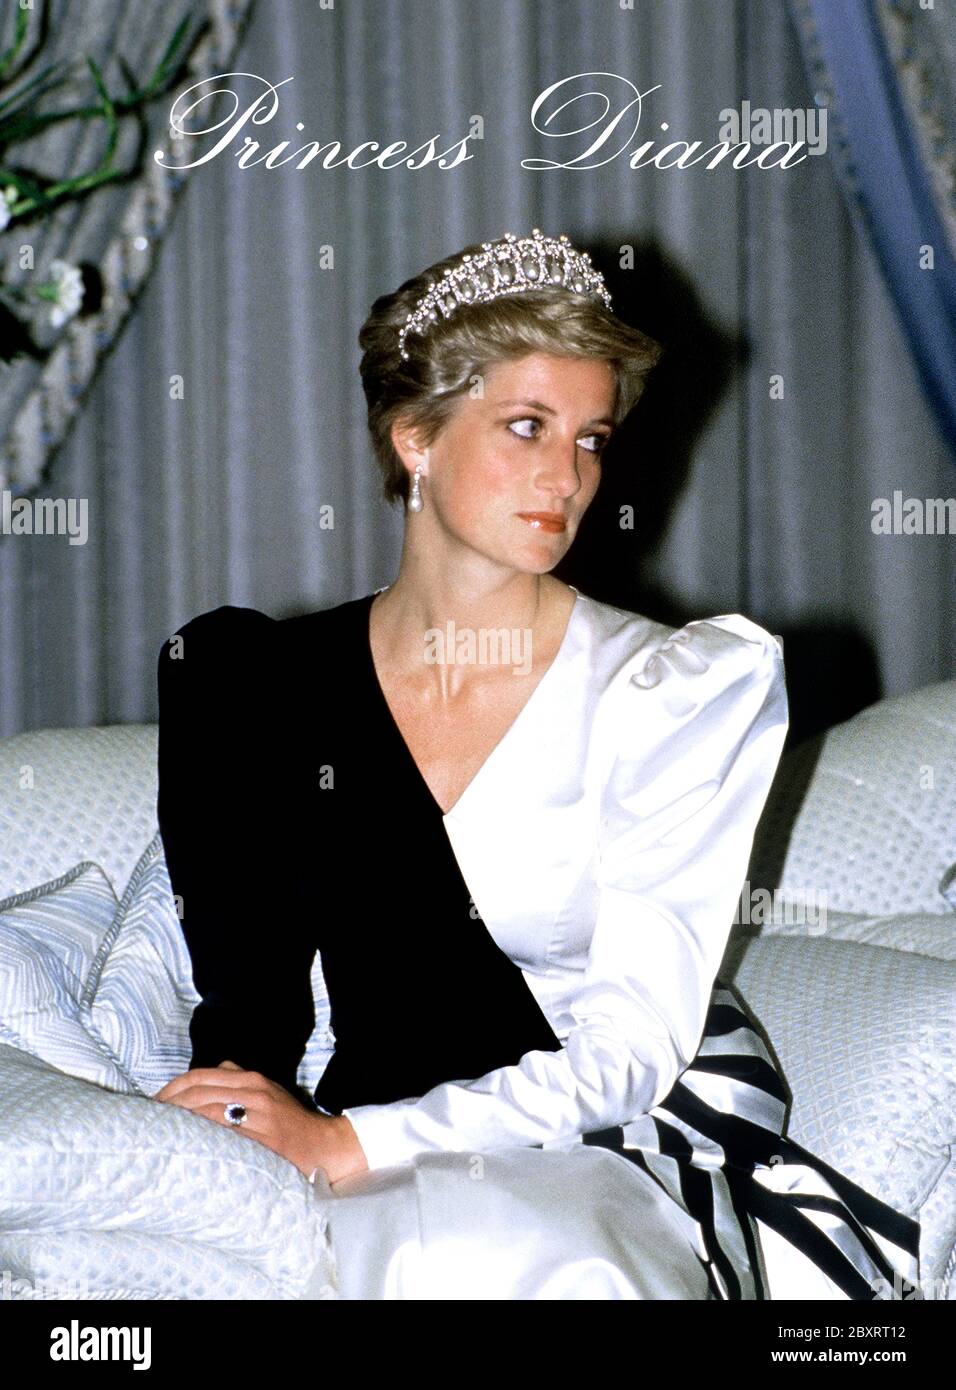 La Principessa Diana, Principessa del Galles, arriva per cena con Re Fahd al Palazzo del Principe ereditario - Palazzo reale, Riyadh durante il suo tour reale di Sau Foto Stock